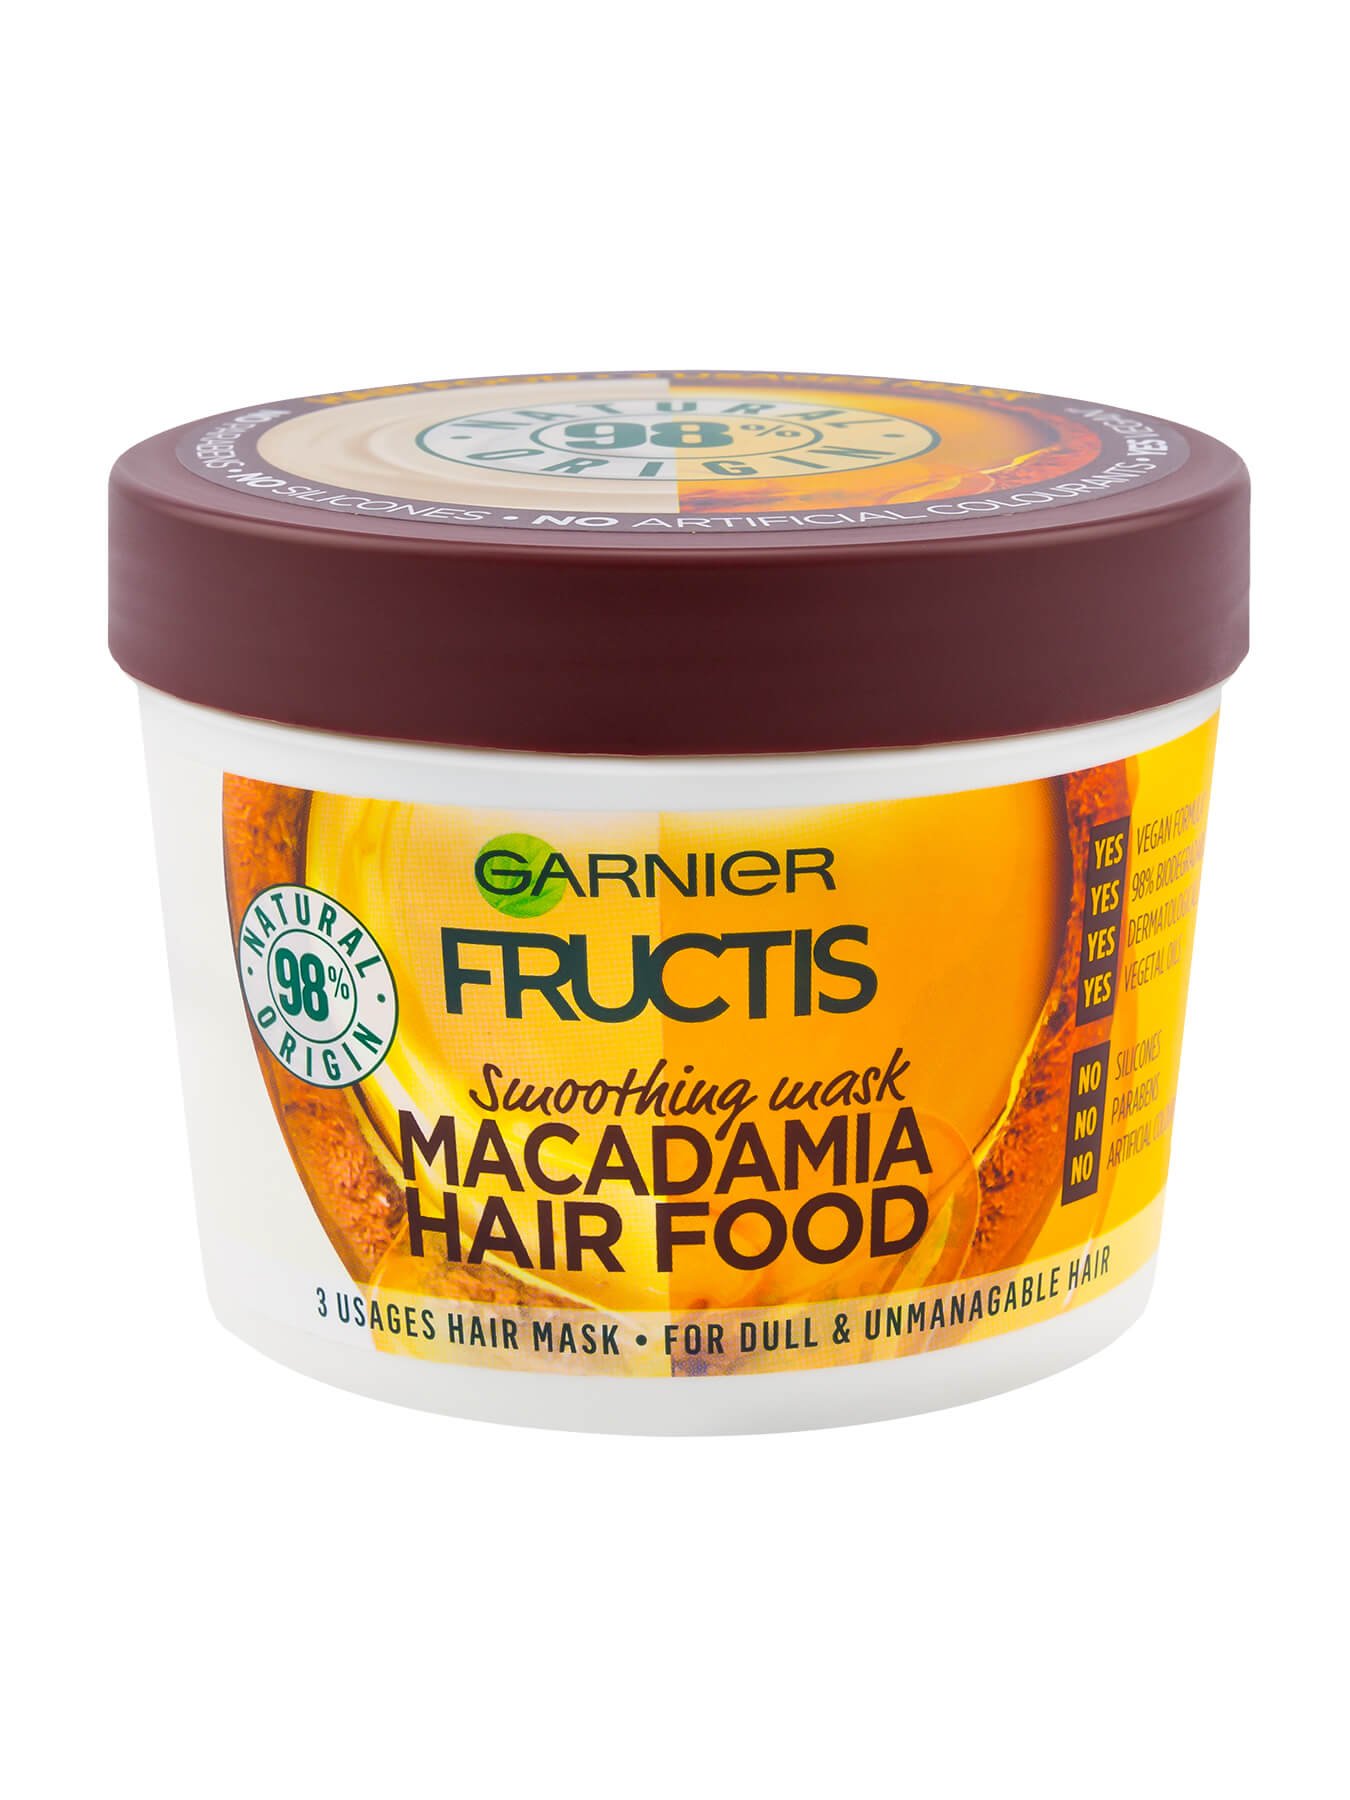 Garnier Fructis Hair Food Macadamia Maska